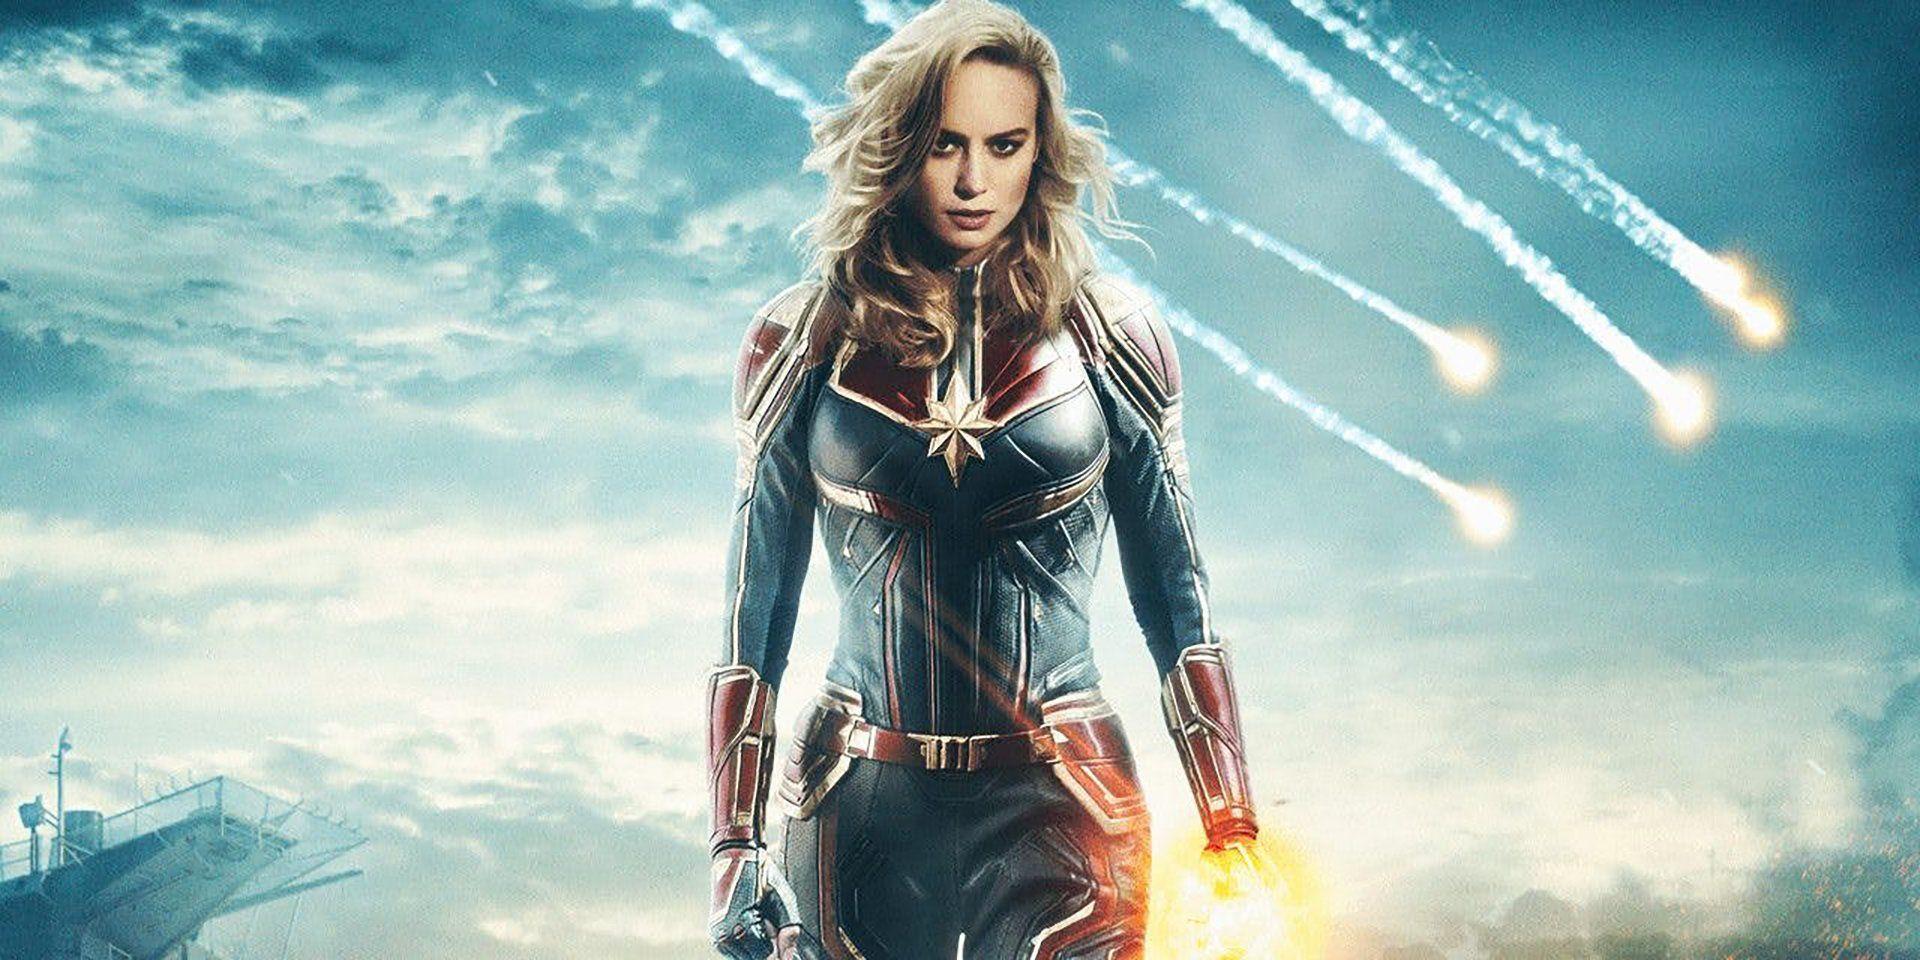 Captain Marvel Avengers Brie Larson Super Hero Image Wallpaper